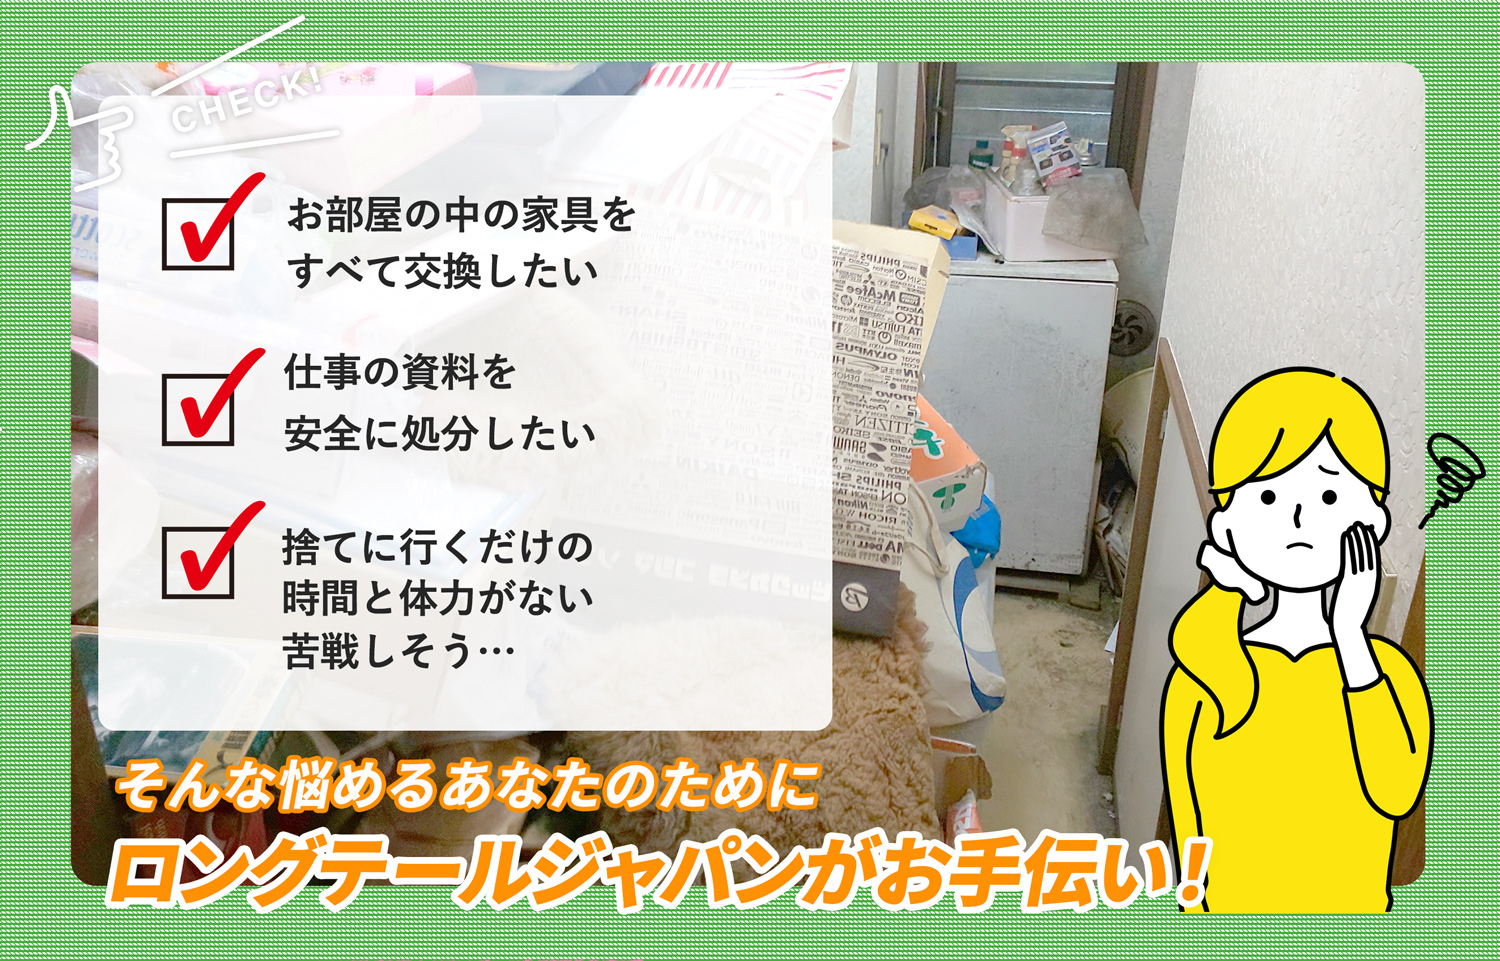 武蔵村山市でお部屋の中から店舗、事務所、倉庫まで自分達で片付けられない場合はお部屋の片付け隊がやらせていただきます。